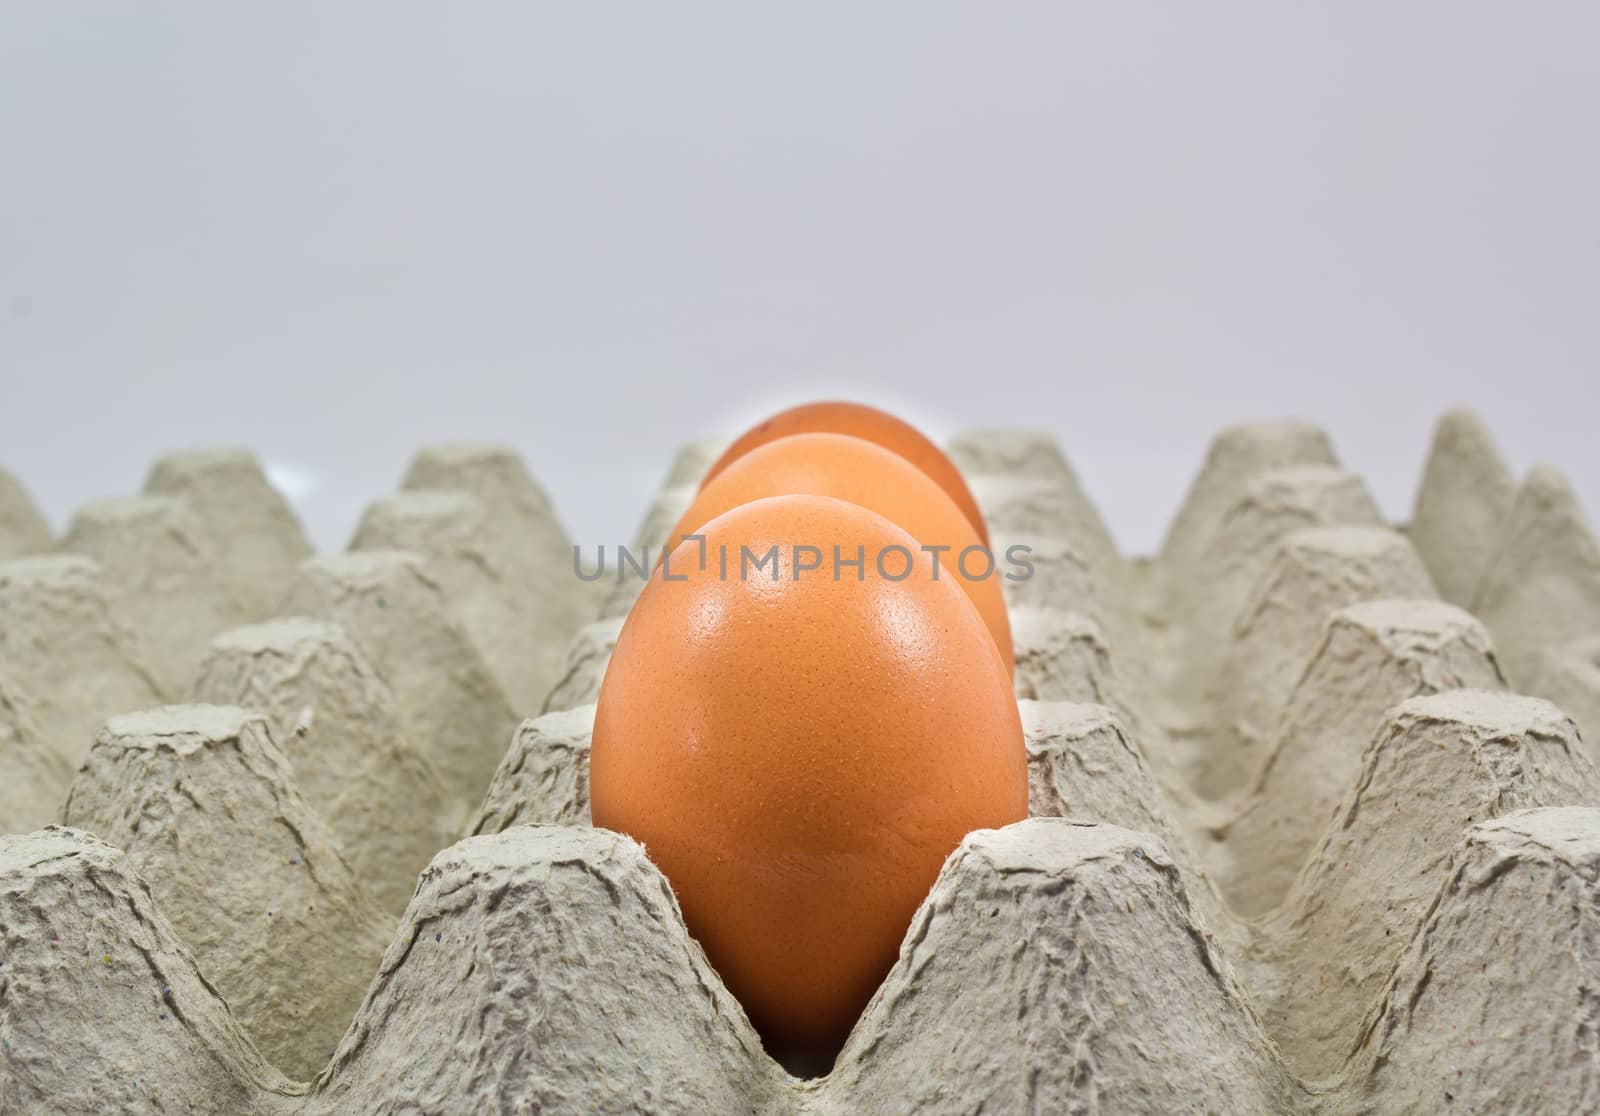 Shelves eggs to prevent egg broken